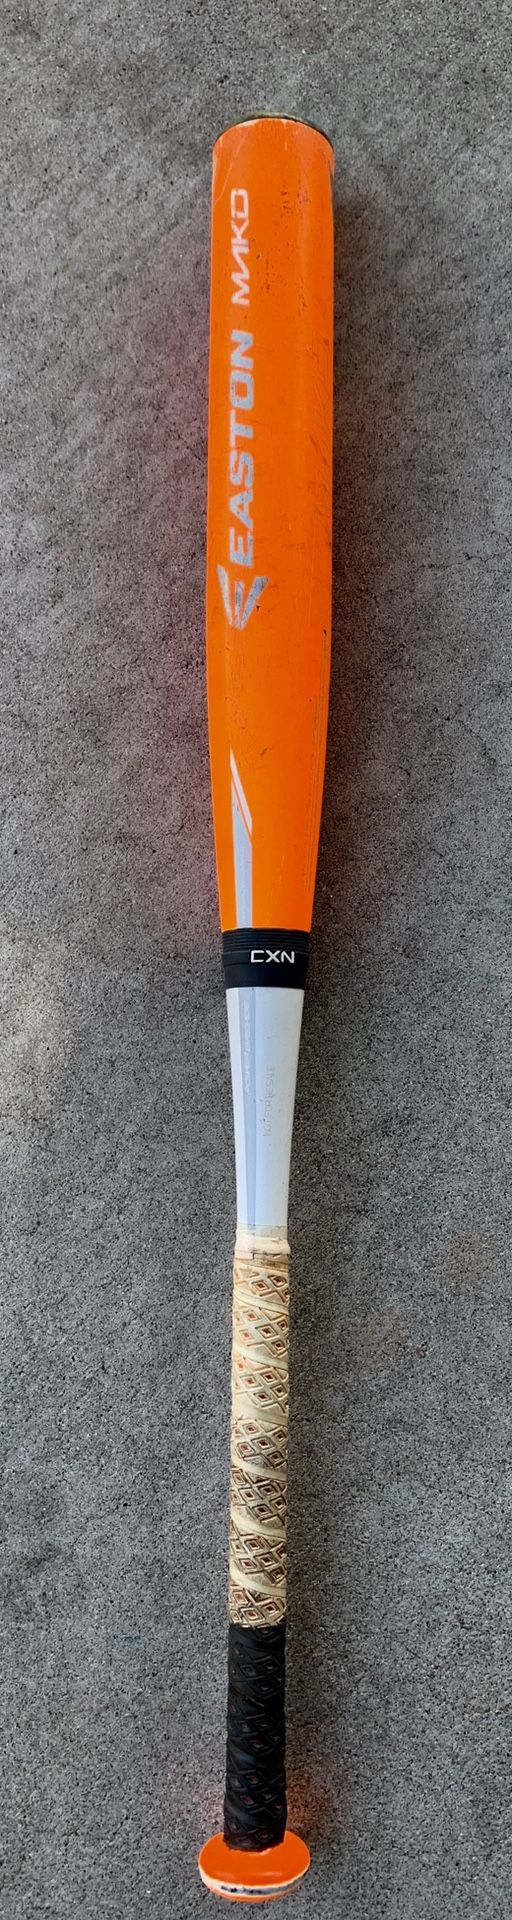 Easton Mako baseball bat